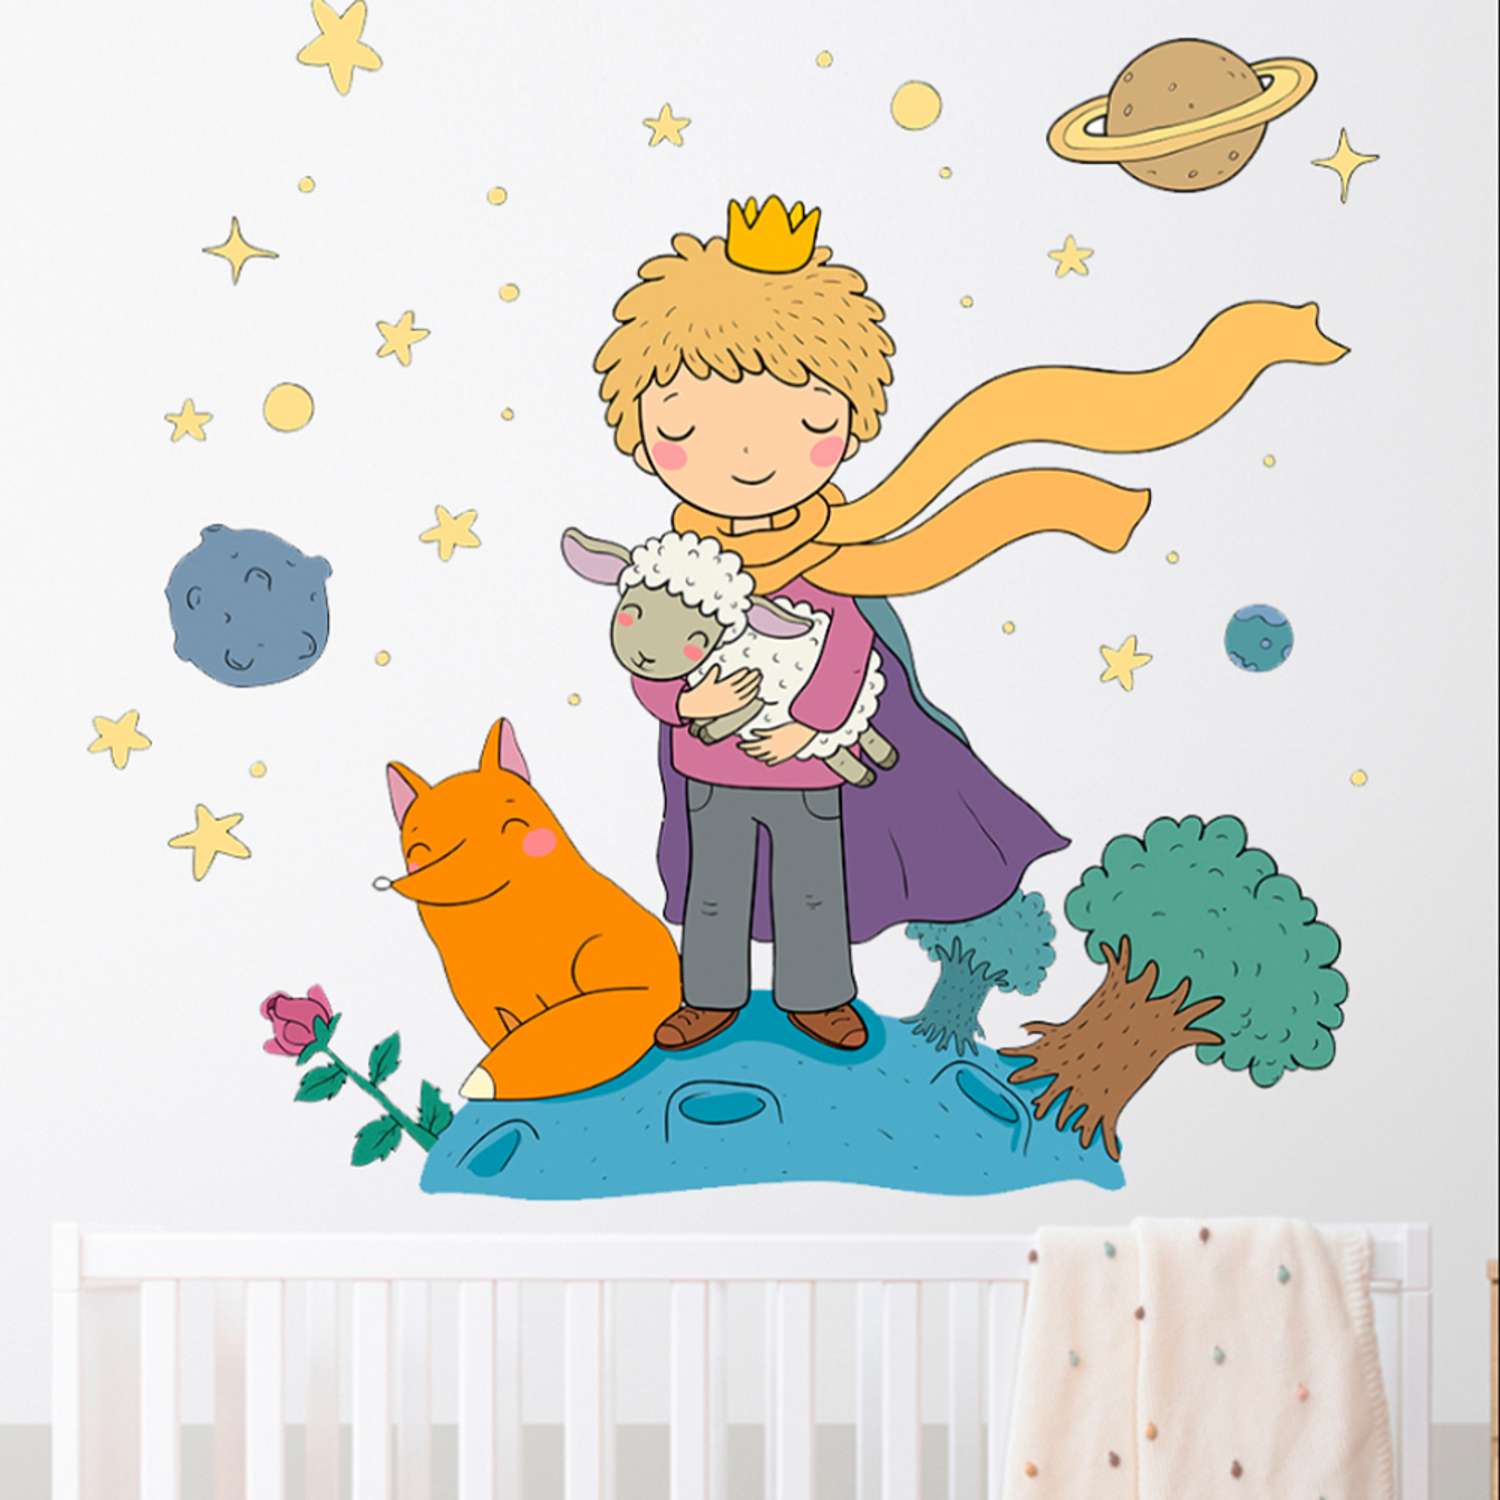 Наклейка интерьерная Woozzee Маленький принц - фото 1